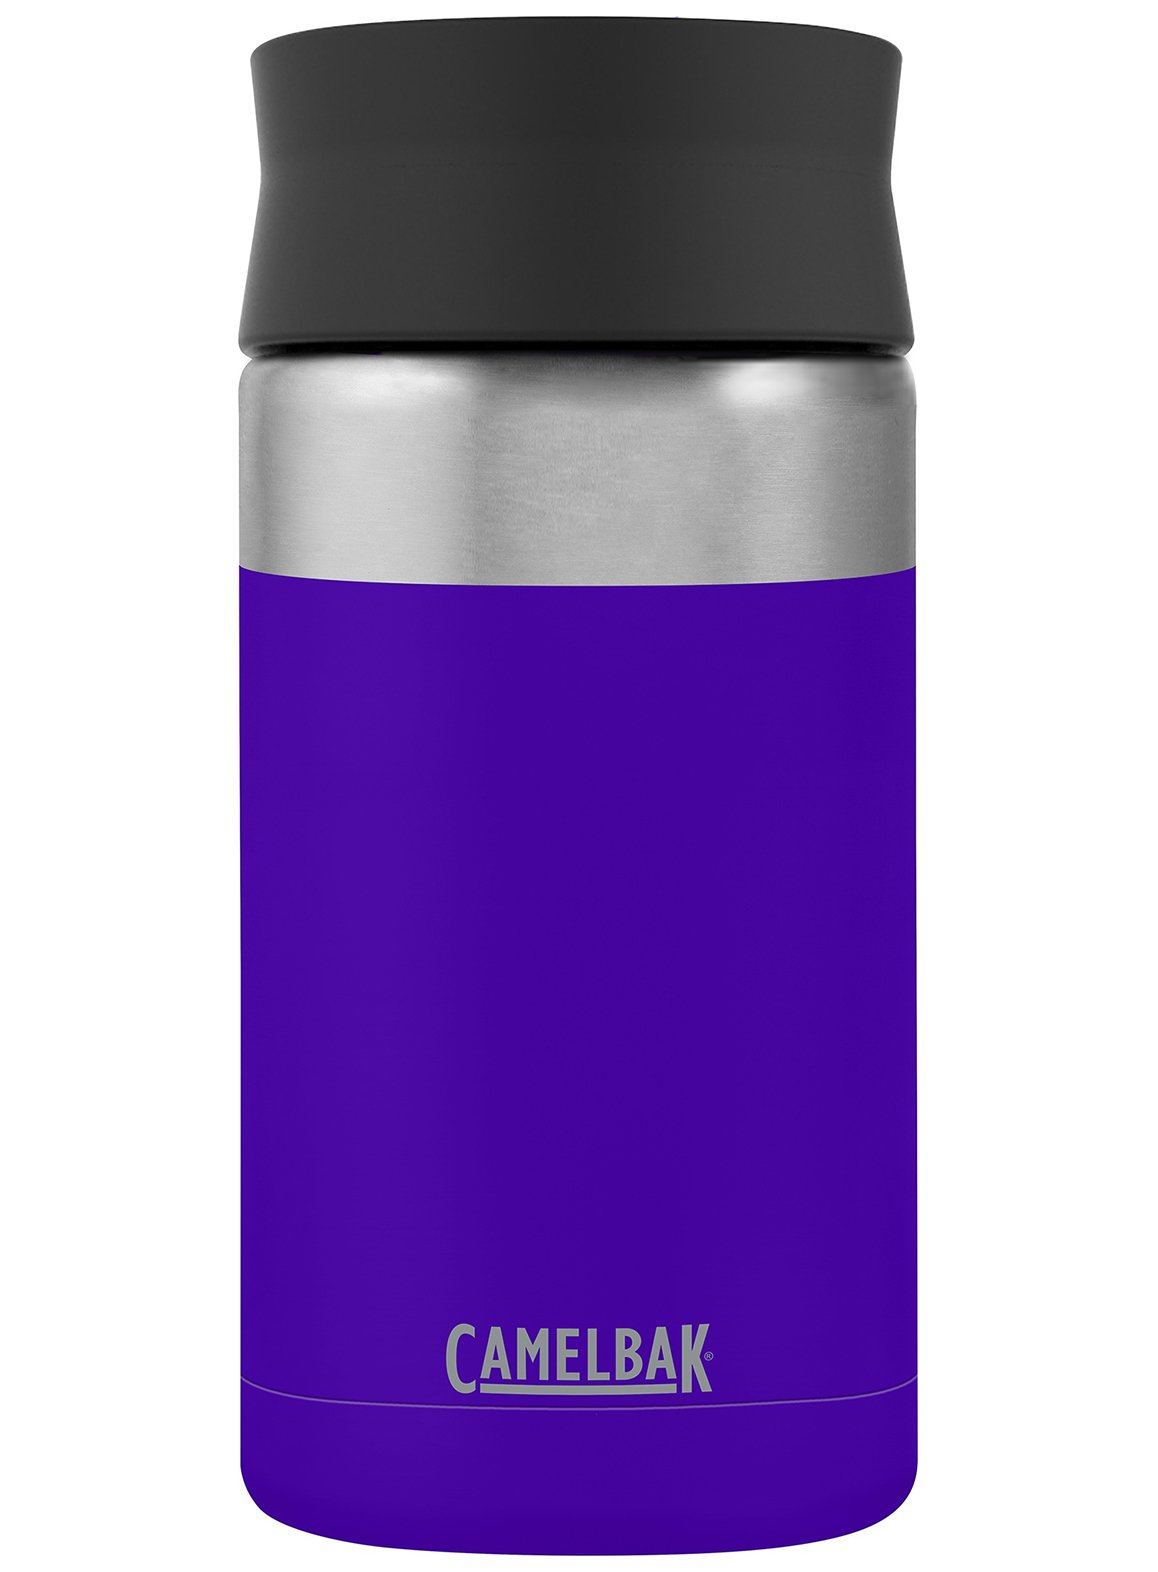 Camelbak Hot Cap Travel Mug  Close Look & Review 